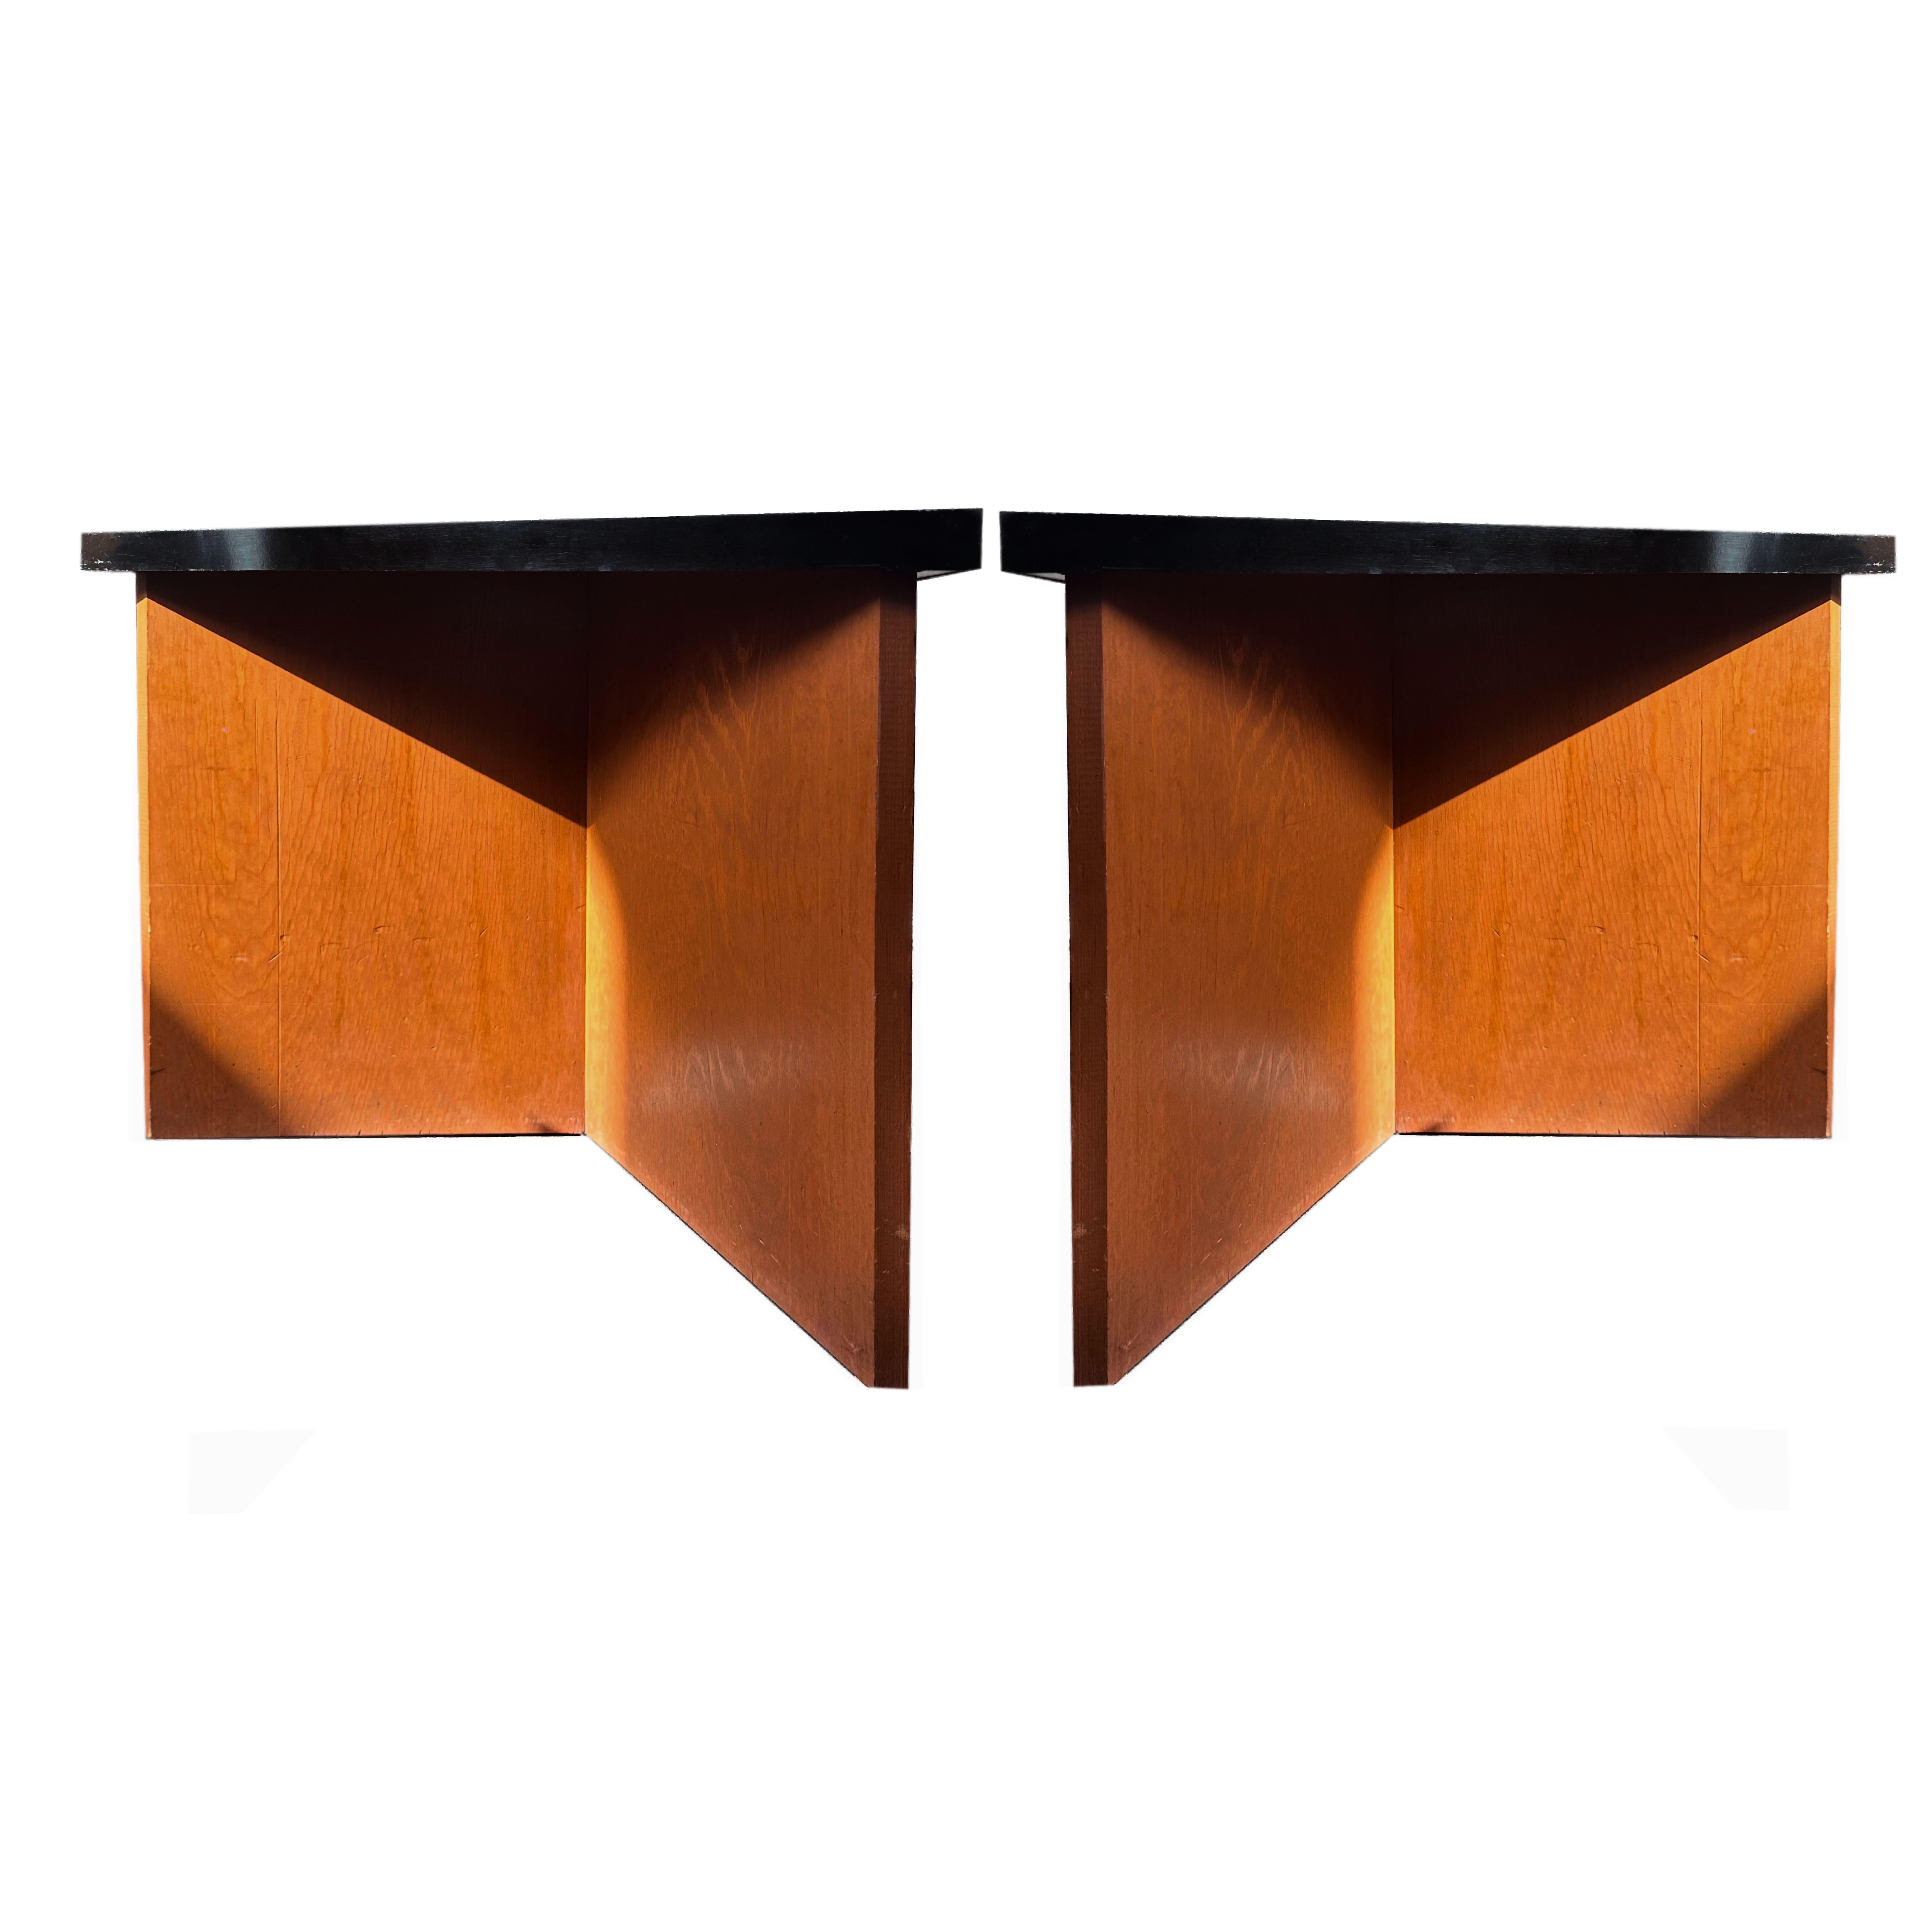 American Frank Lloyd Wright, Original Arnold House Modular Side Table, Triangular, 1954.